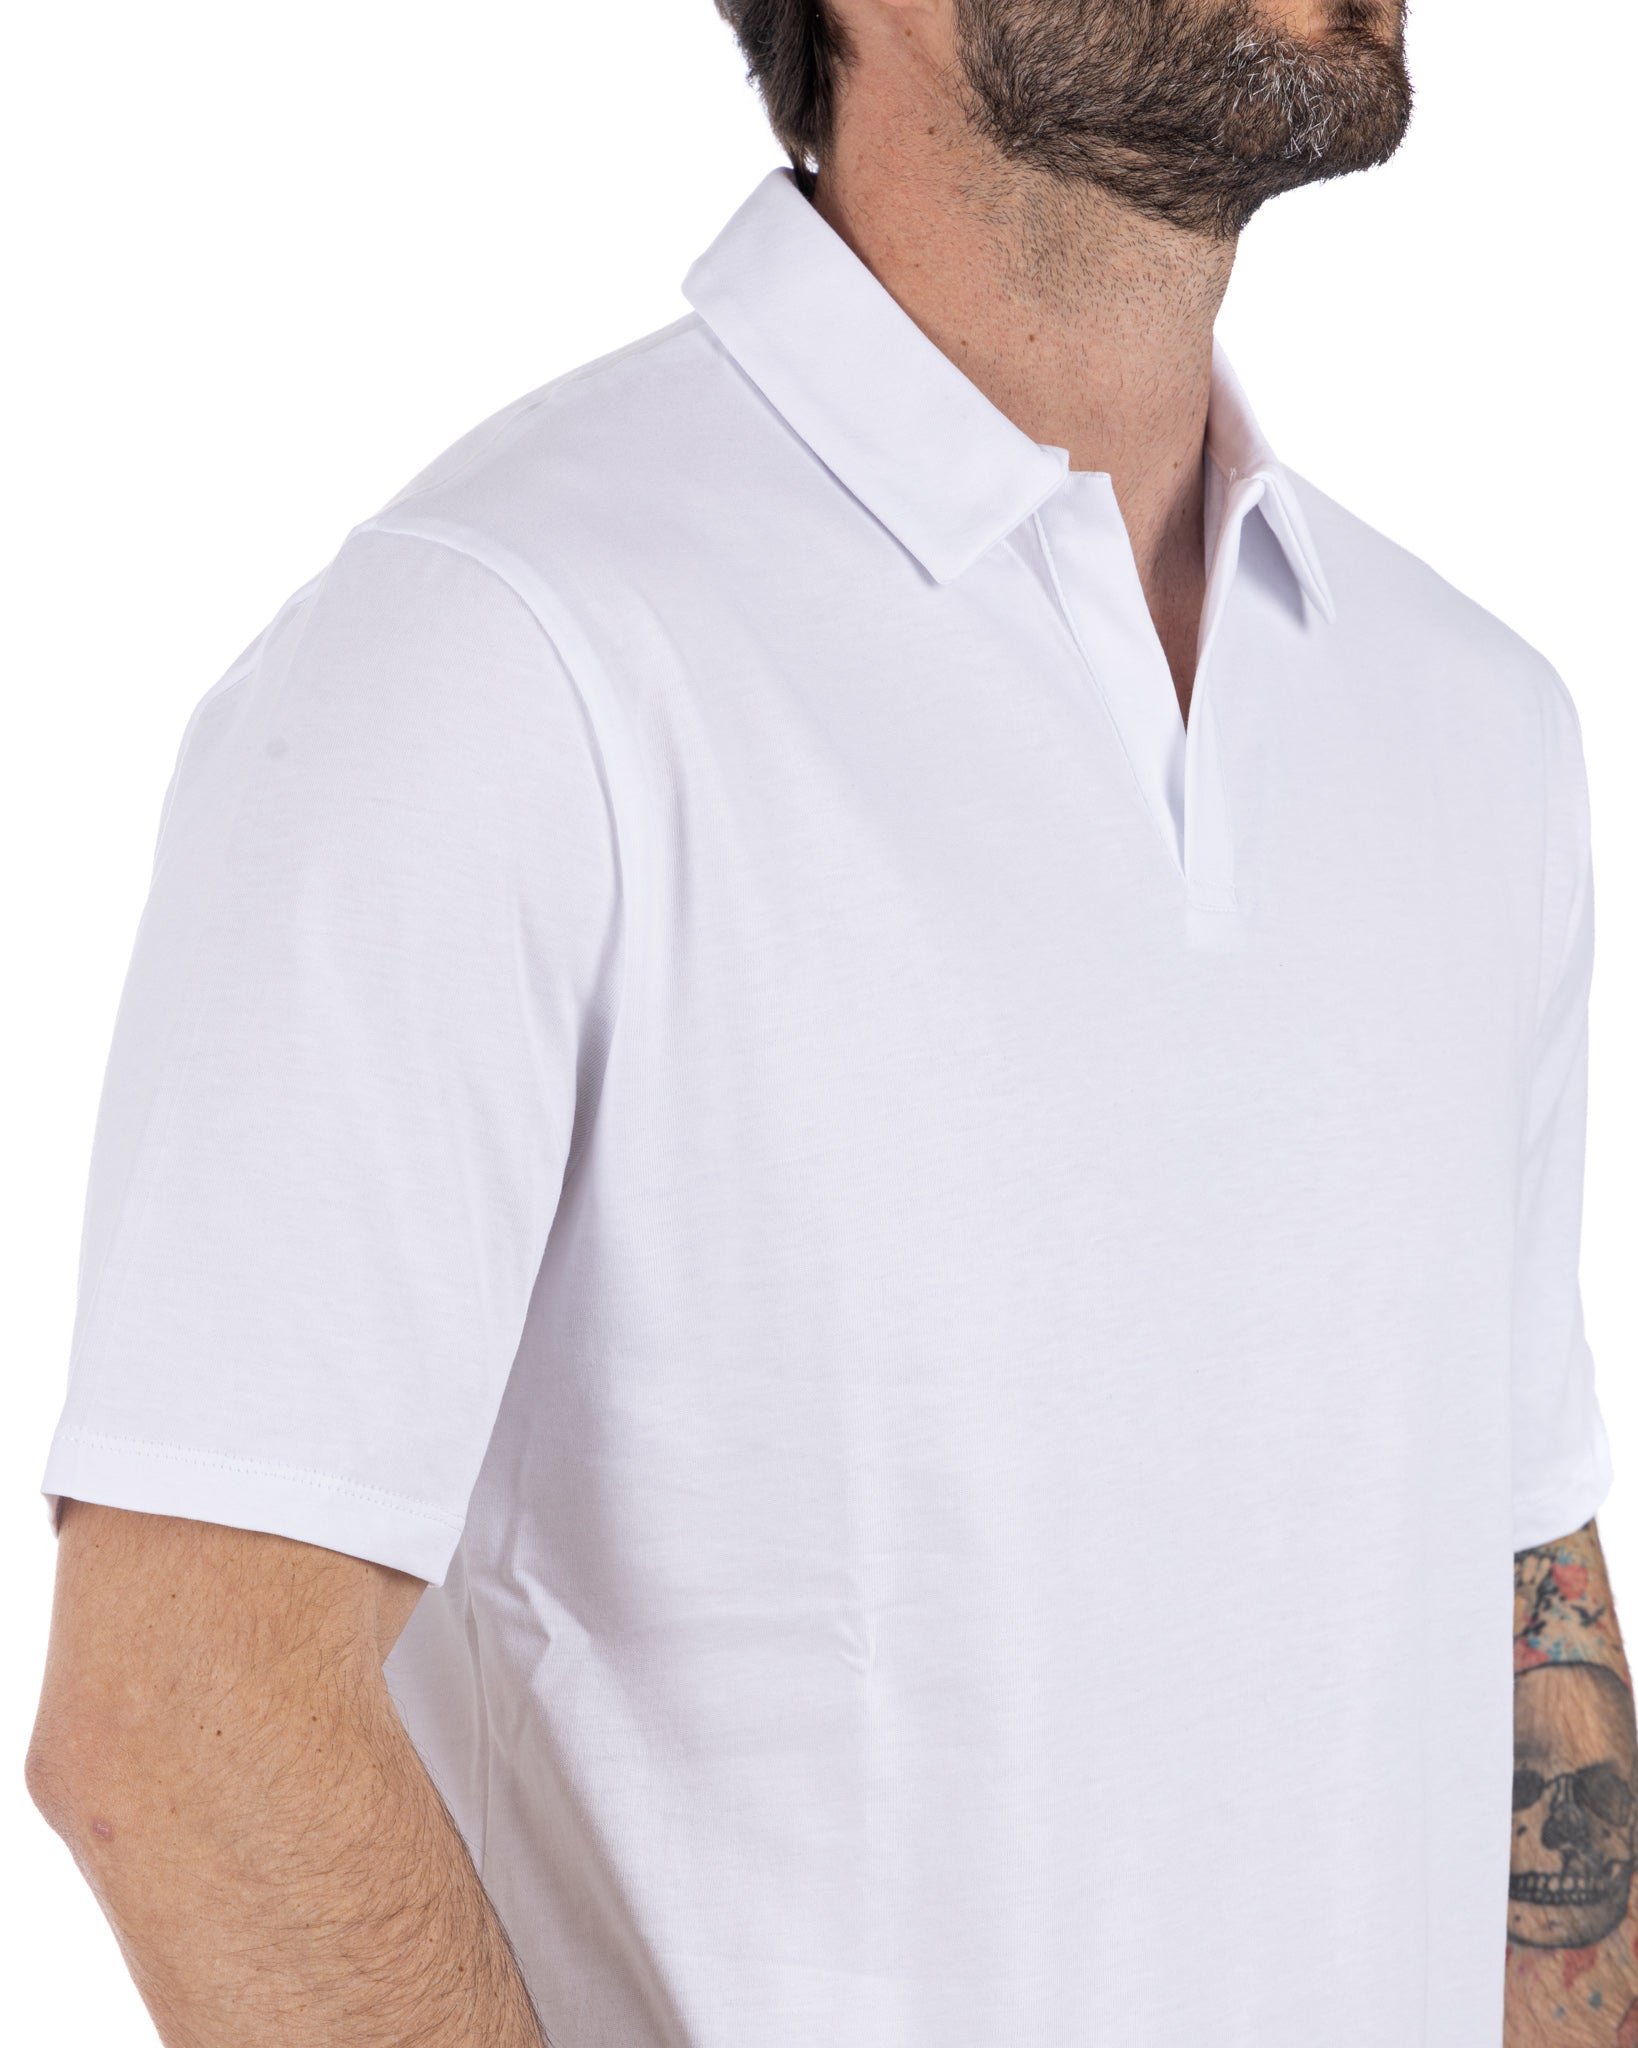 Drew - basic white cotton polo shirt